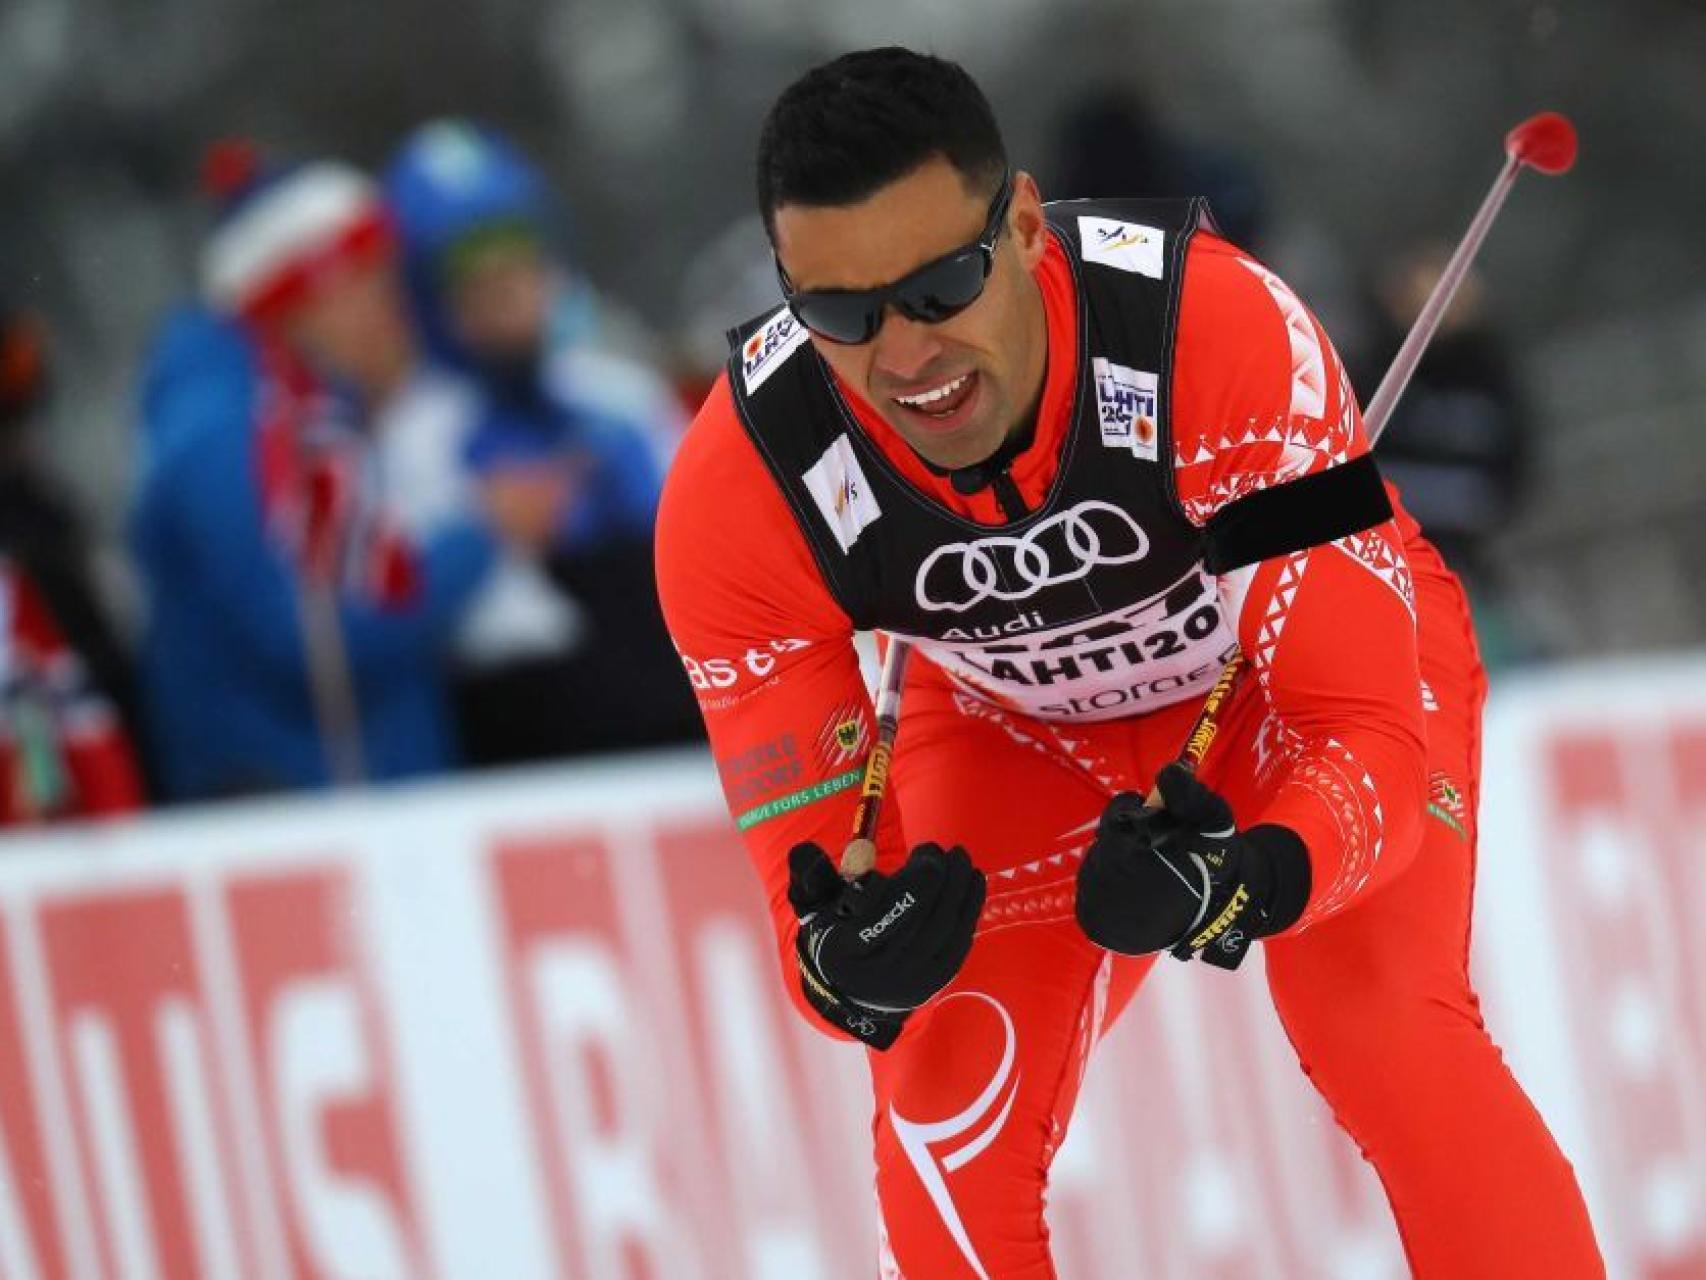 Pita Taufatofua durante su primera prueba de la Copa del Mundo de esquí de fondo en Lahti.